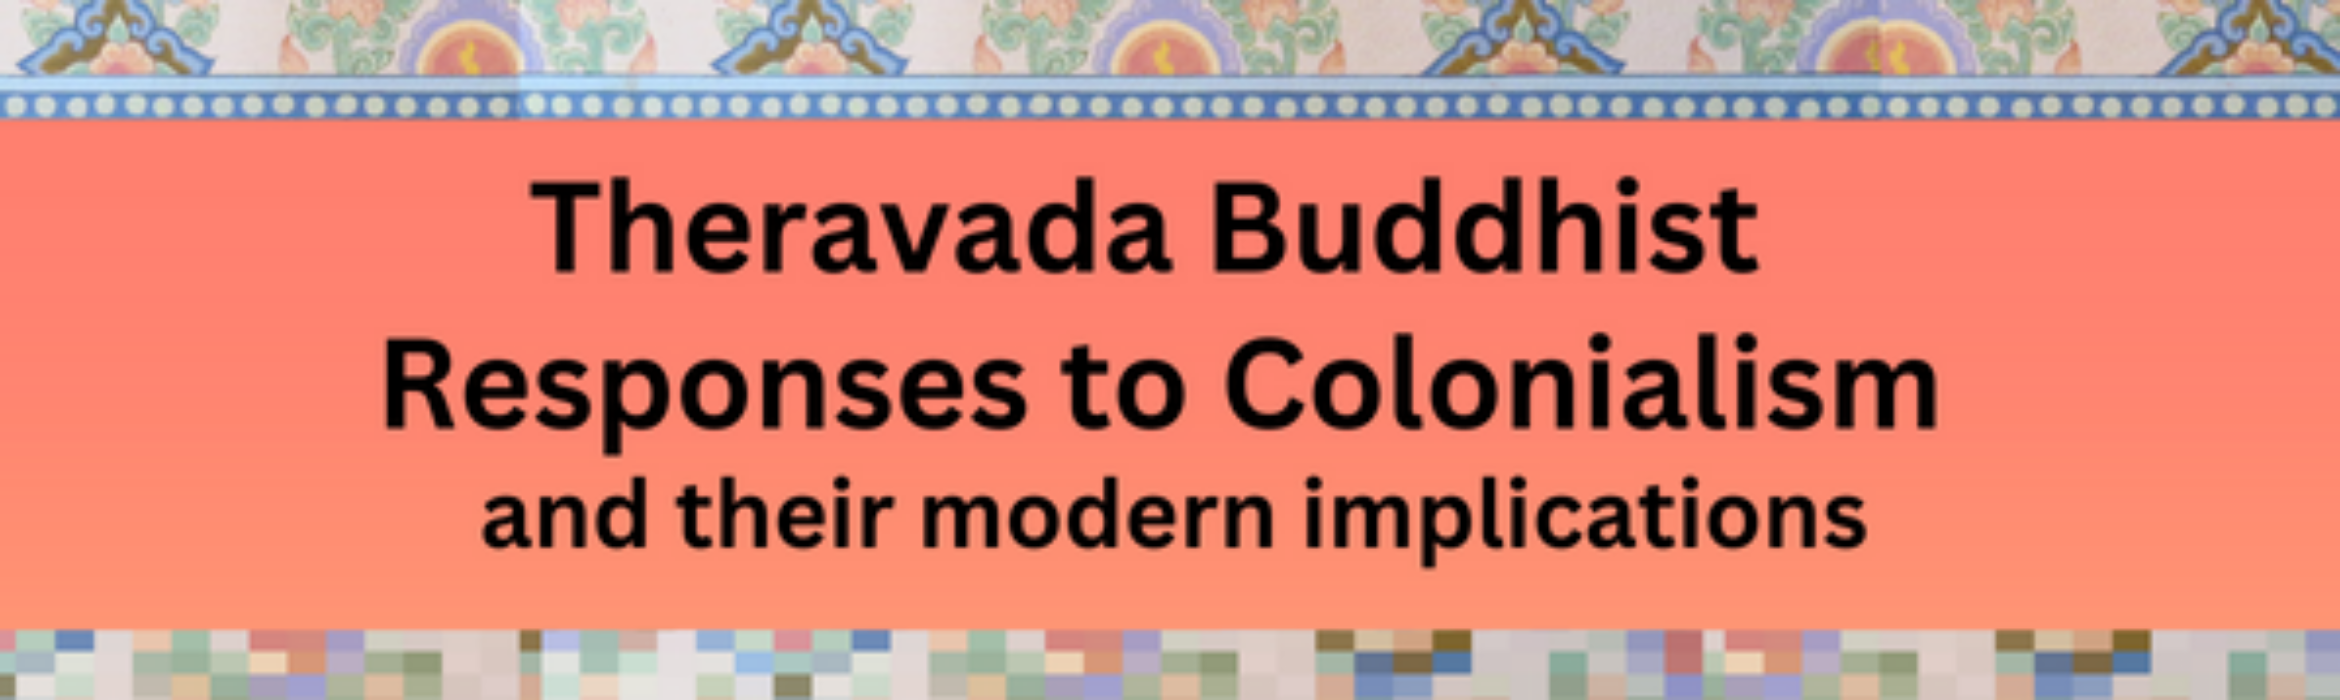 上座部佛教对殖民主义的回应及其现代意义